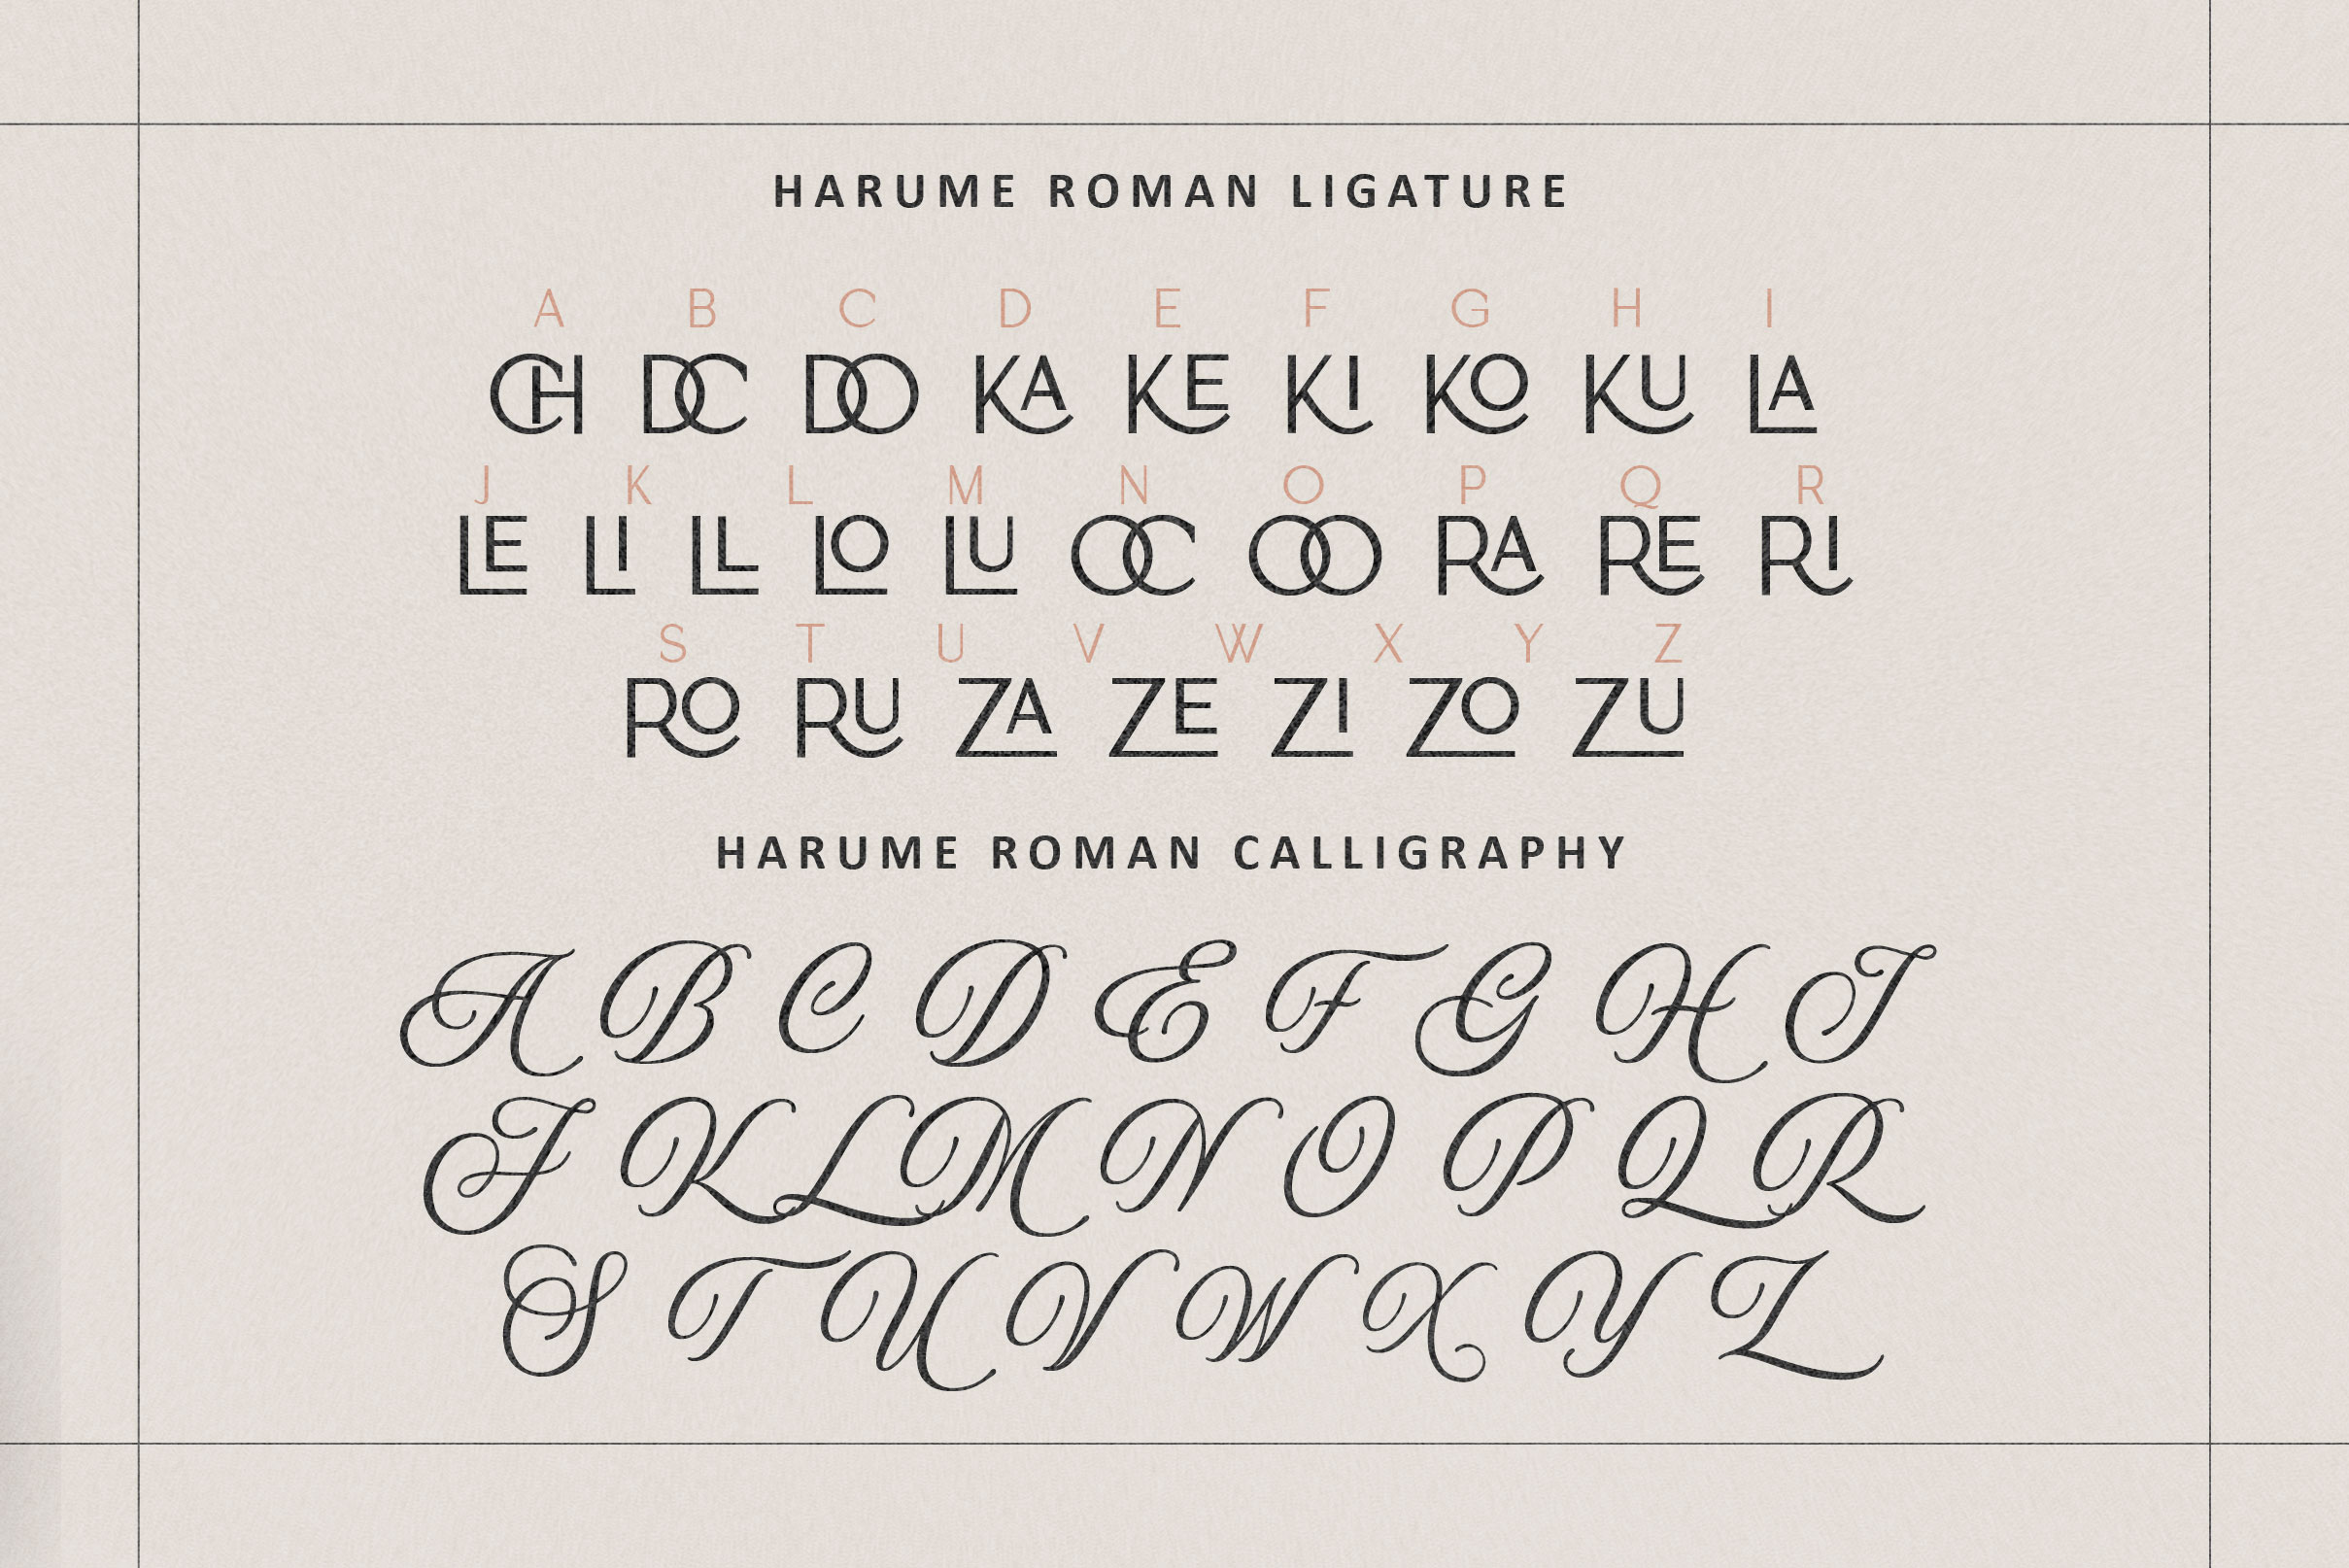 Harume Roman